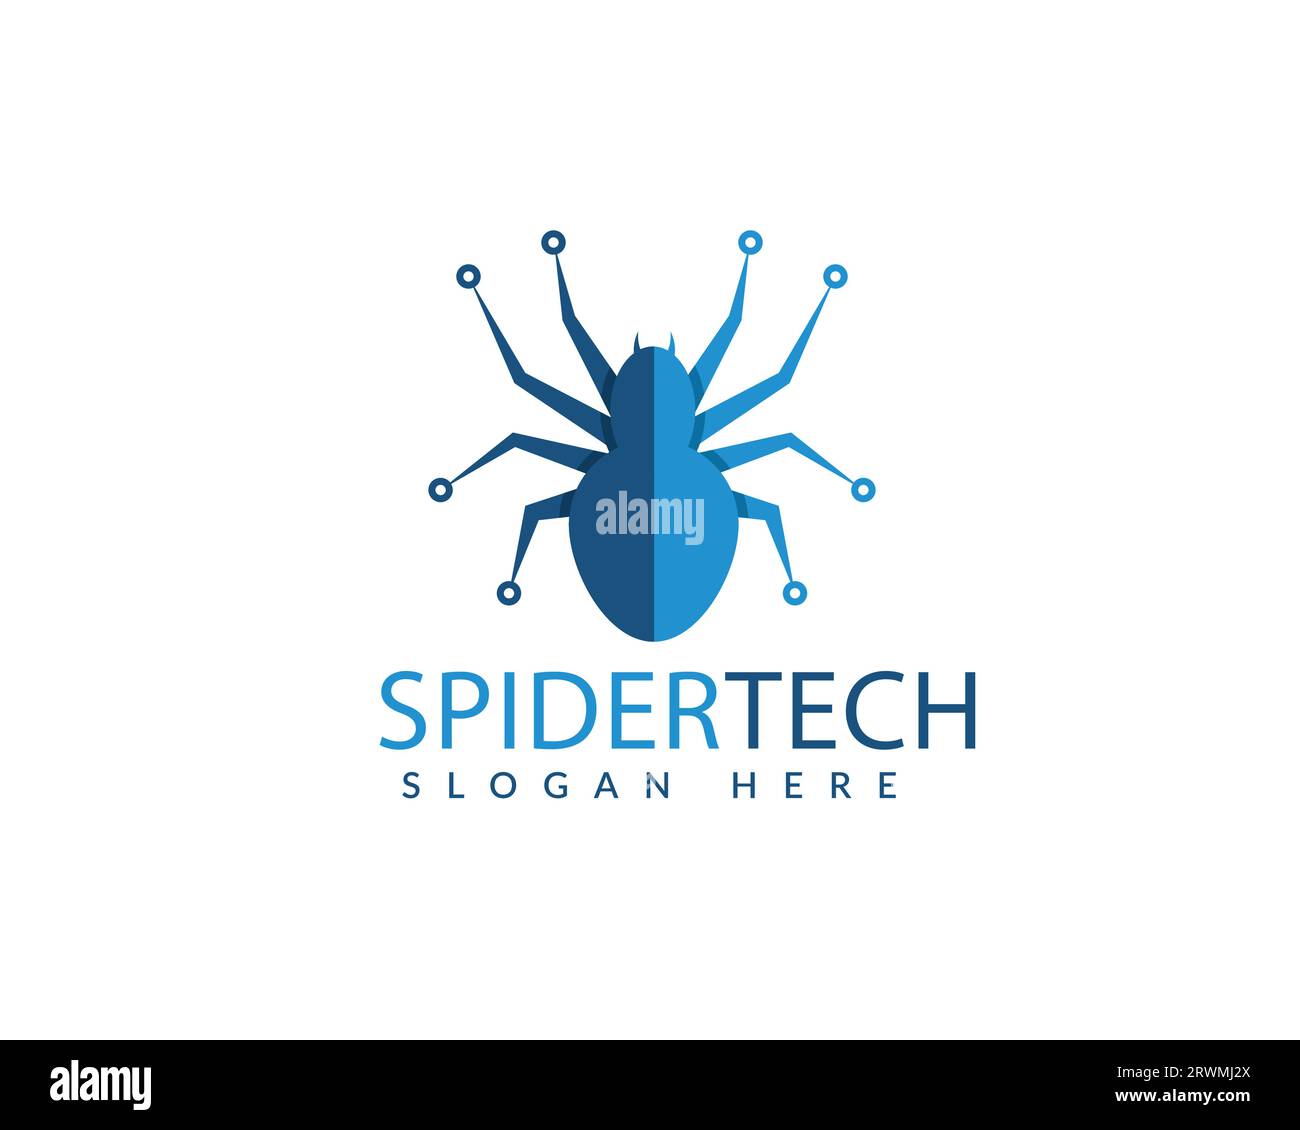 Vektorvorlage für das Design des Spider TECH-Logos. Design-Konzept für digitale Technologie-Logos. Stock Vektor